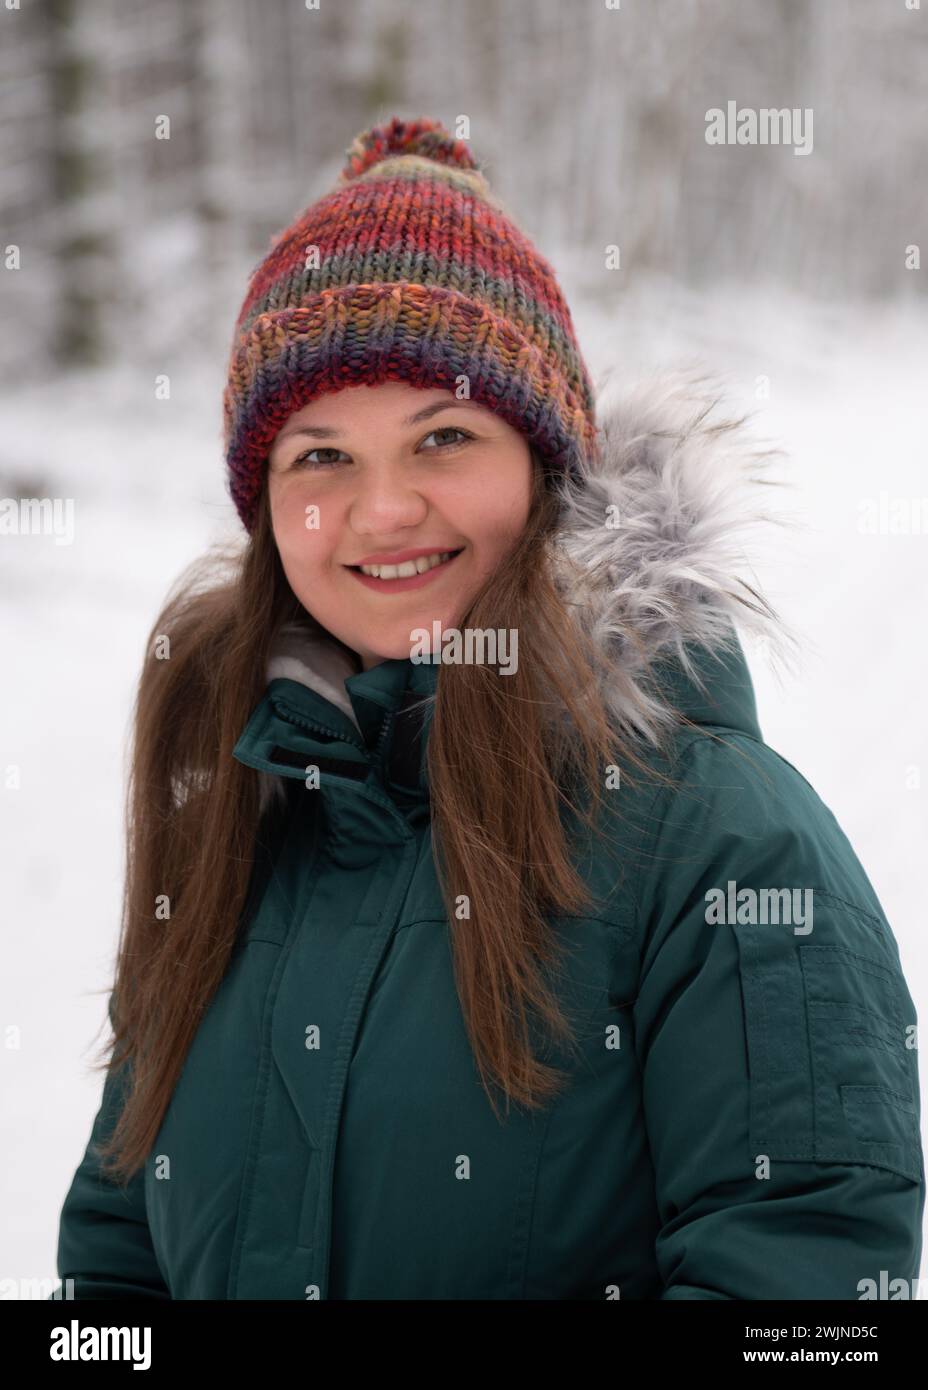 una mujer de cara amistosa con un sombrero de invierno vibrante y una chaqueta verde azulada, contra el telón de fondo sereno de un bosque nevado. Su cálida sonrisa contrasta con t Foto de stock